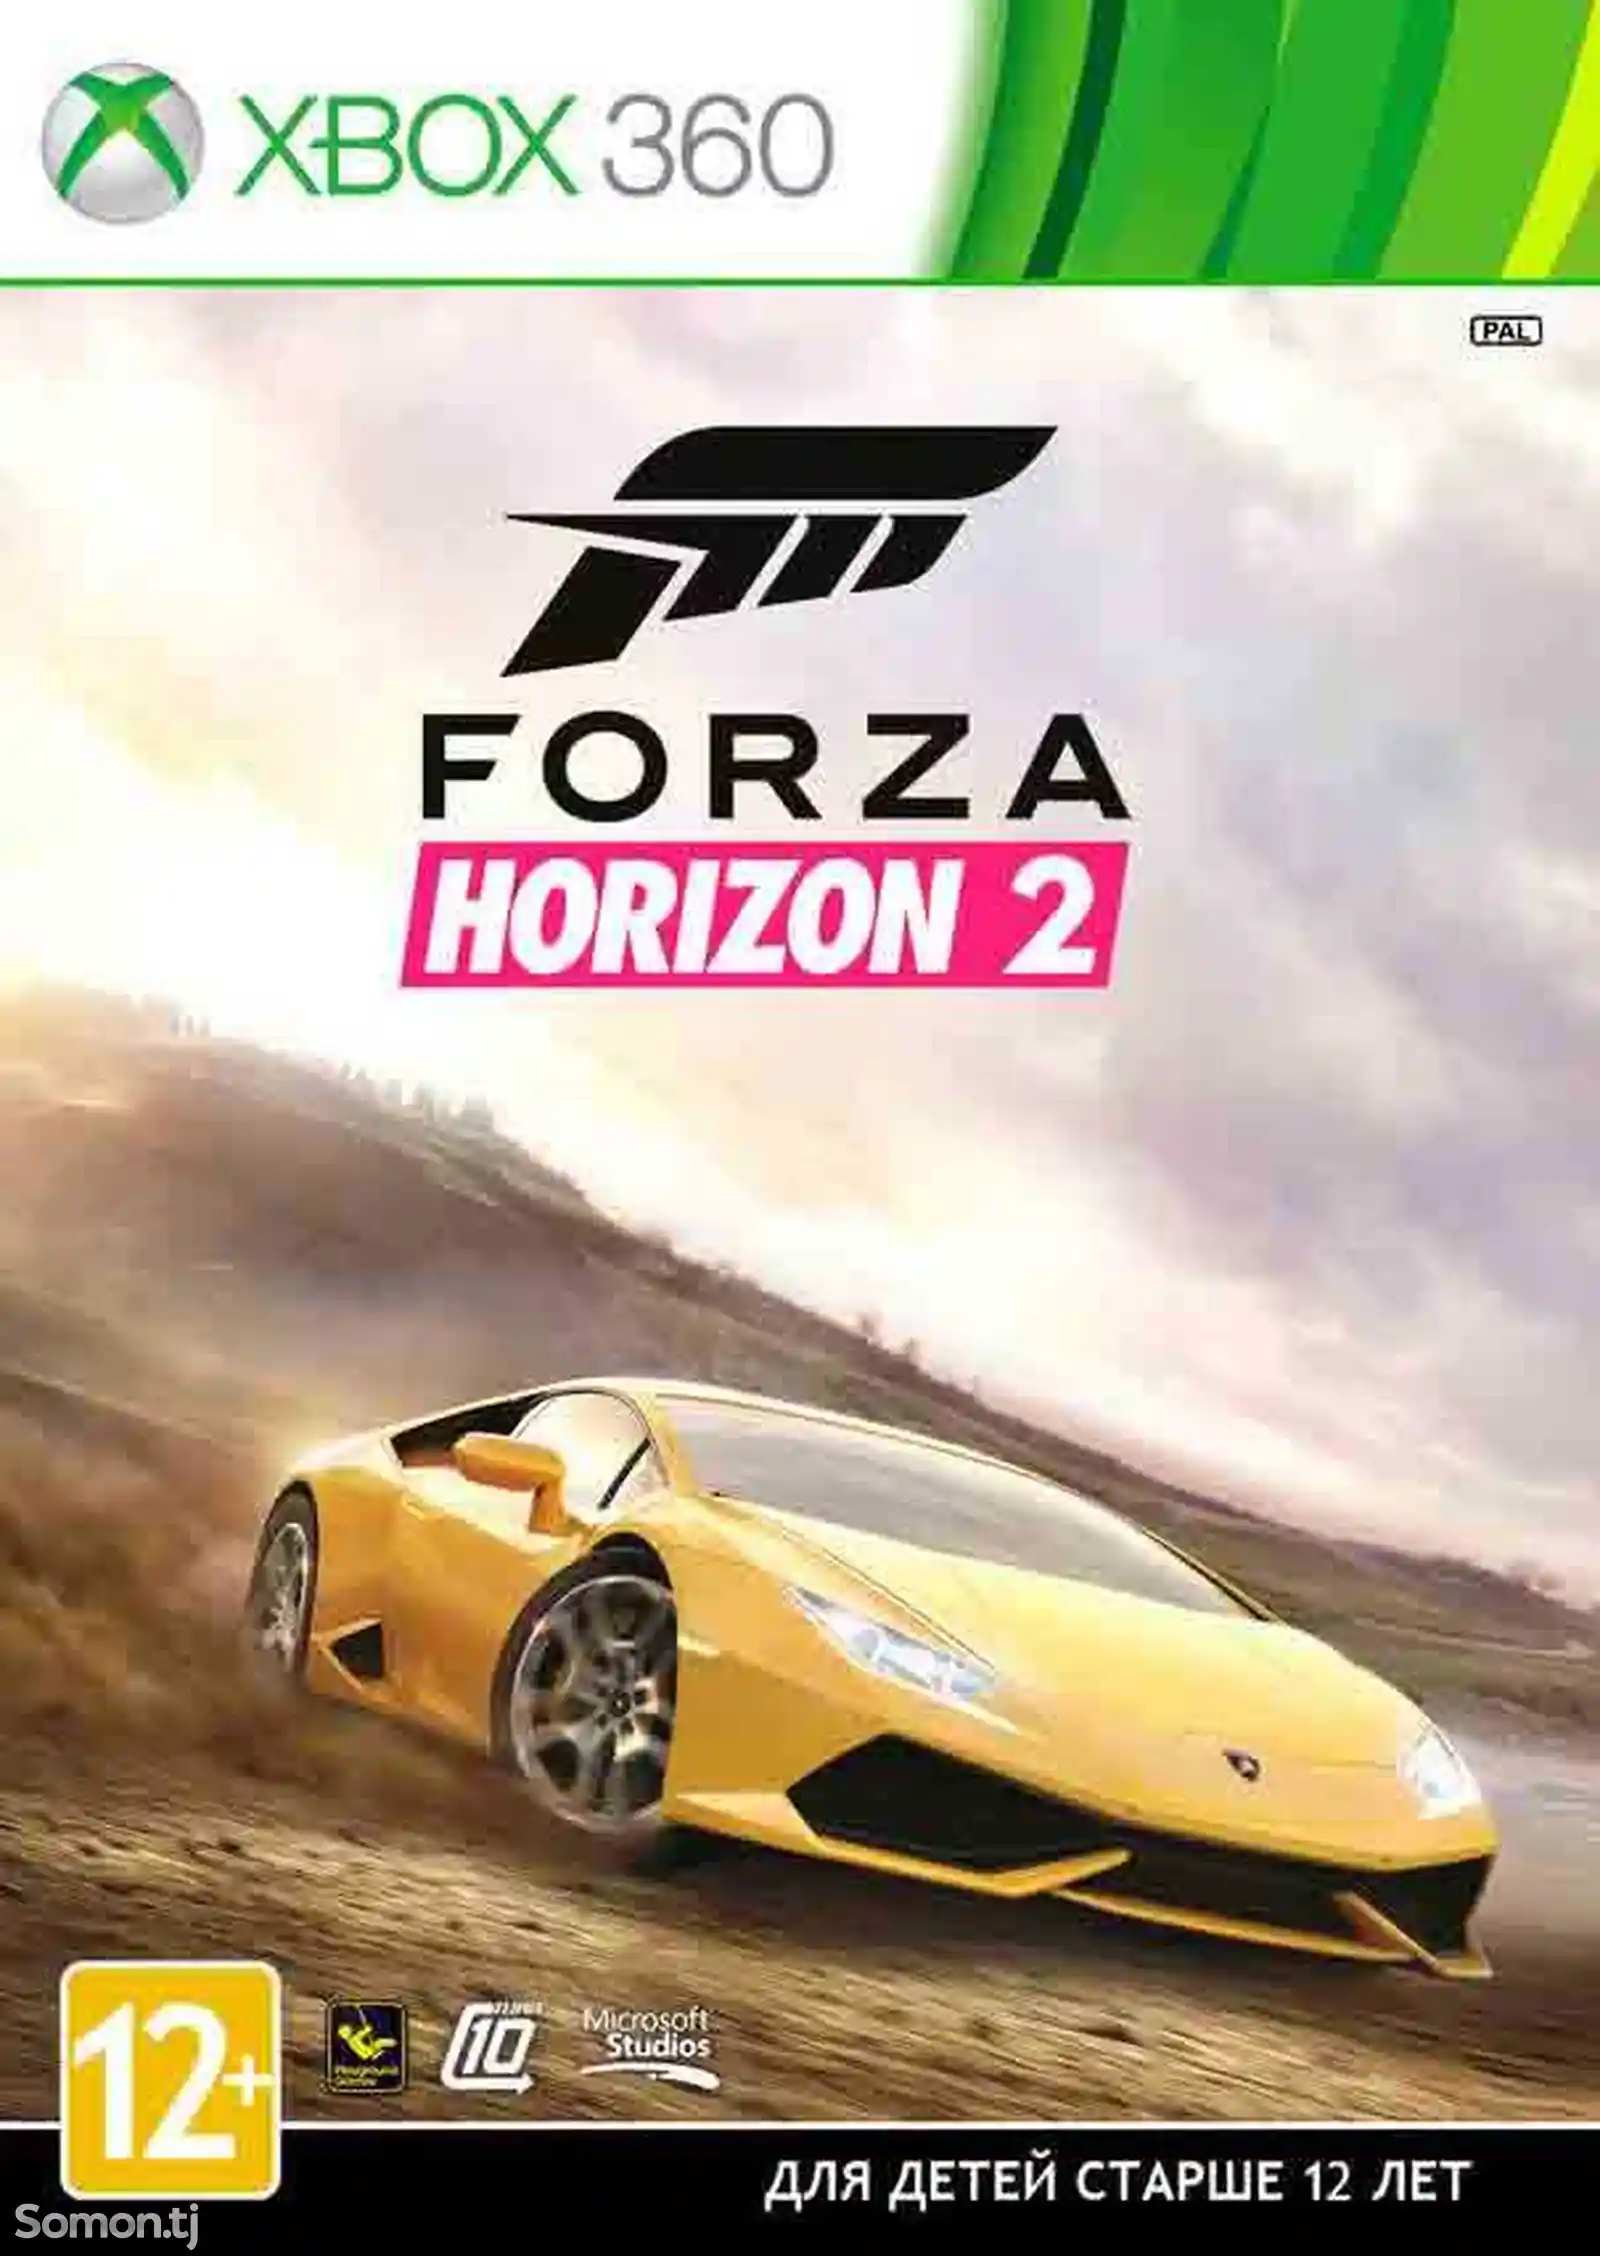 Игра Forza horizon 2 для прошитых Xbox 360